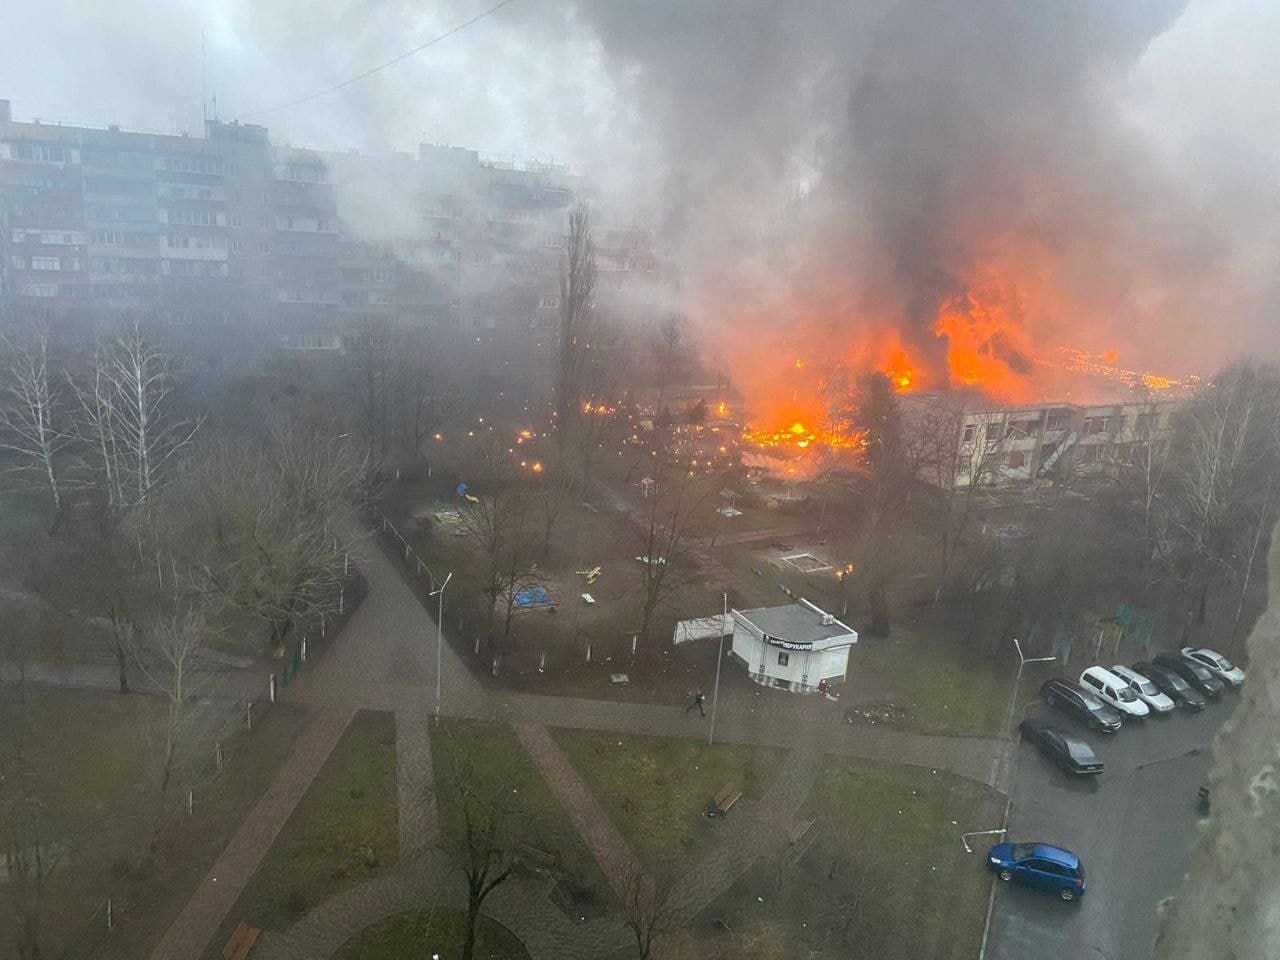 直升機墜毀含內政部長14人罹難 烏克蘭展開調查